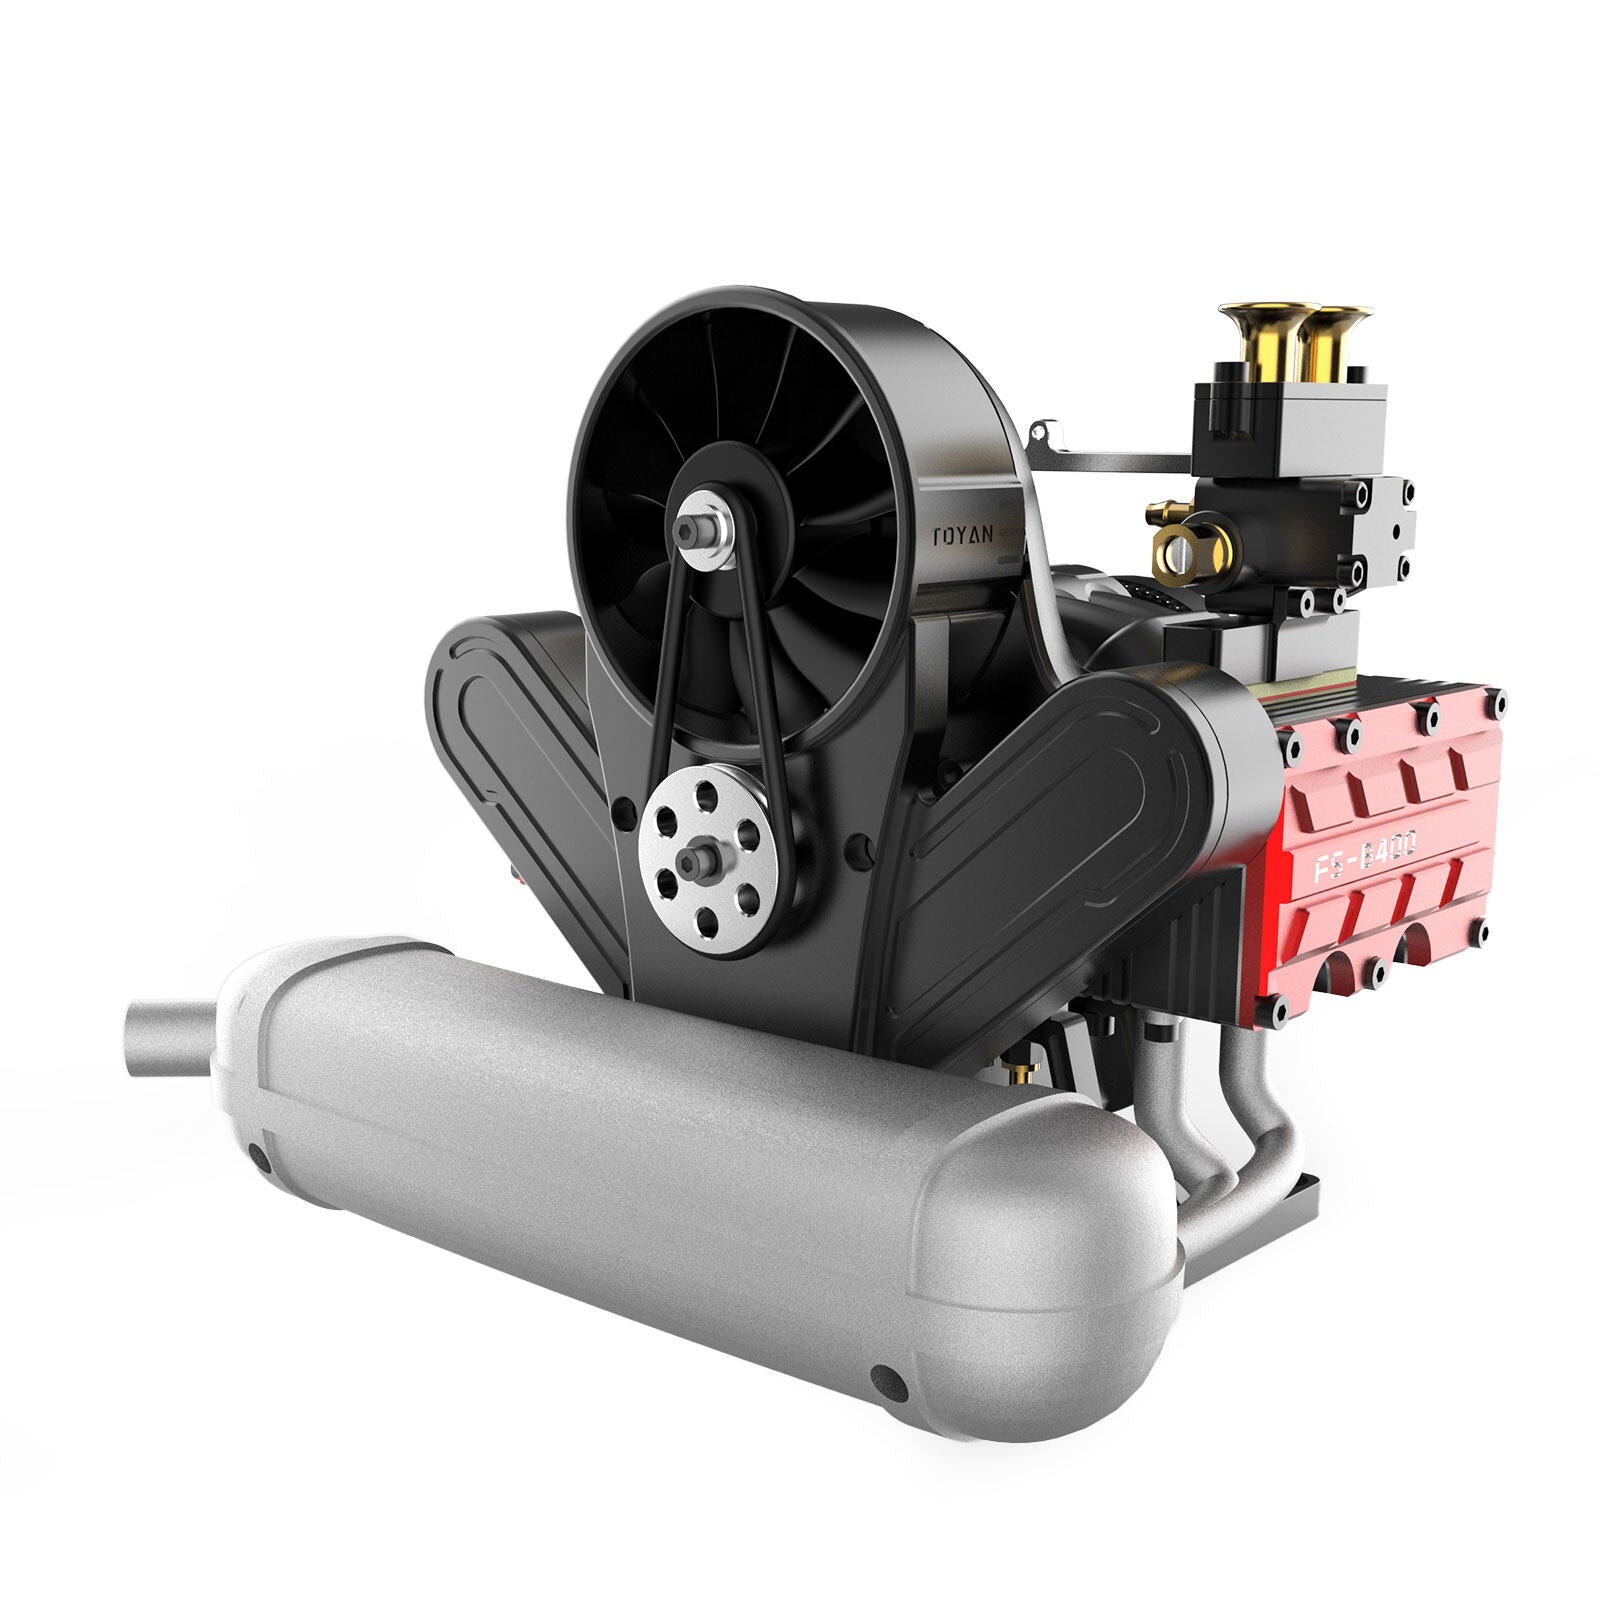 TOYAN V8 Engine FS-V800G 28cc Gasoline Model Kit with Supercharger, CD –  enginediyshop